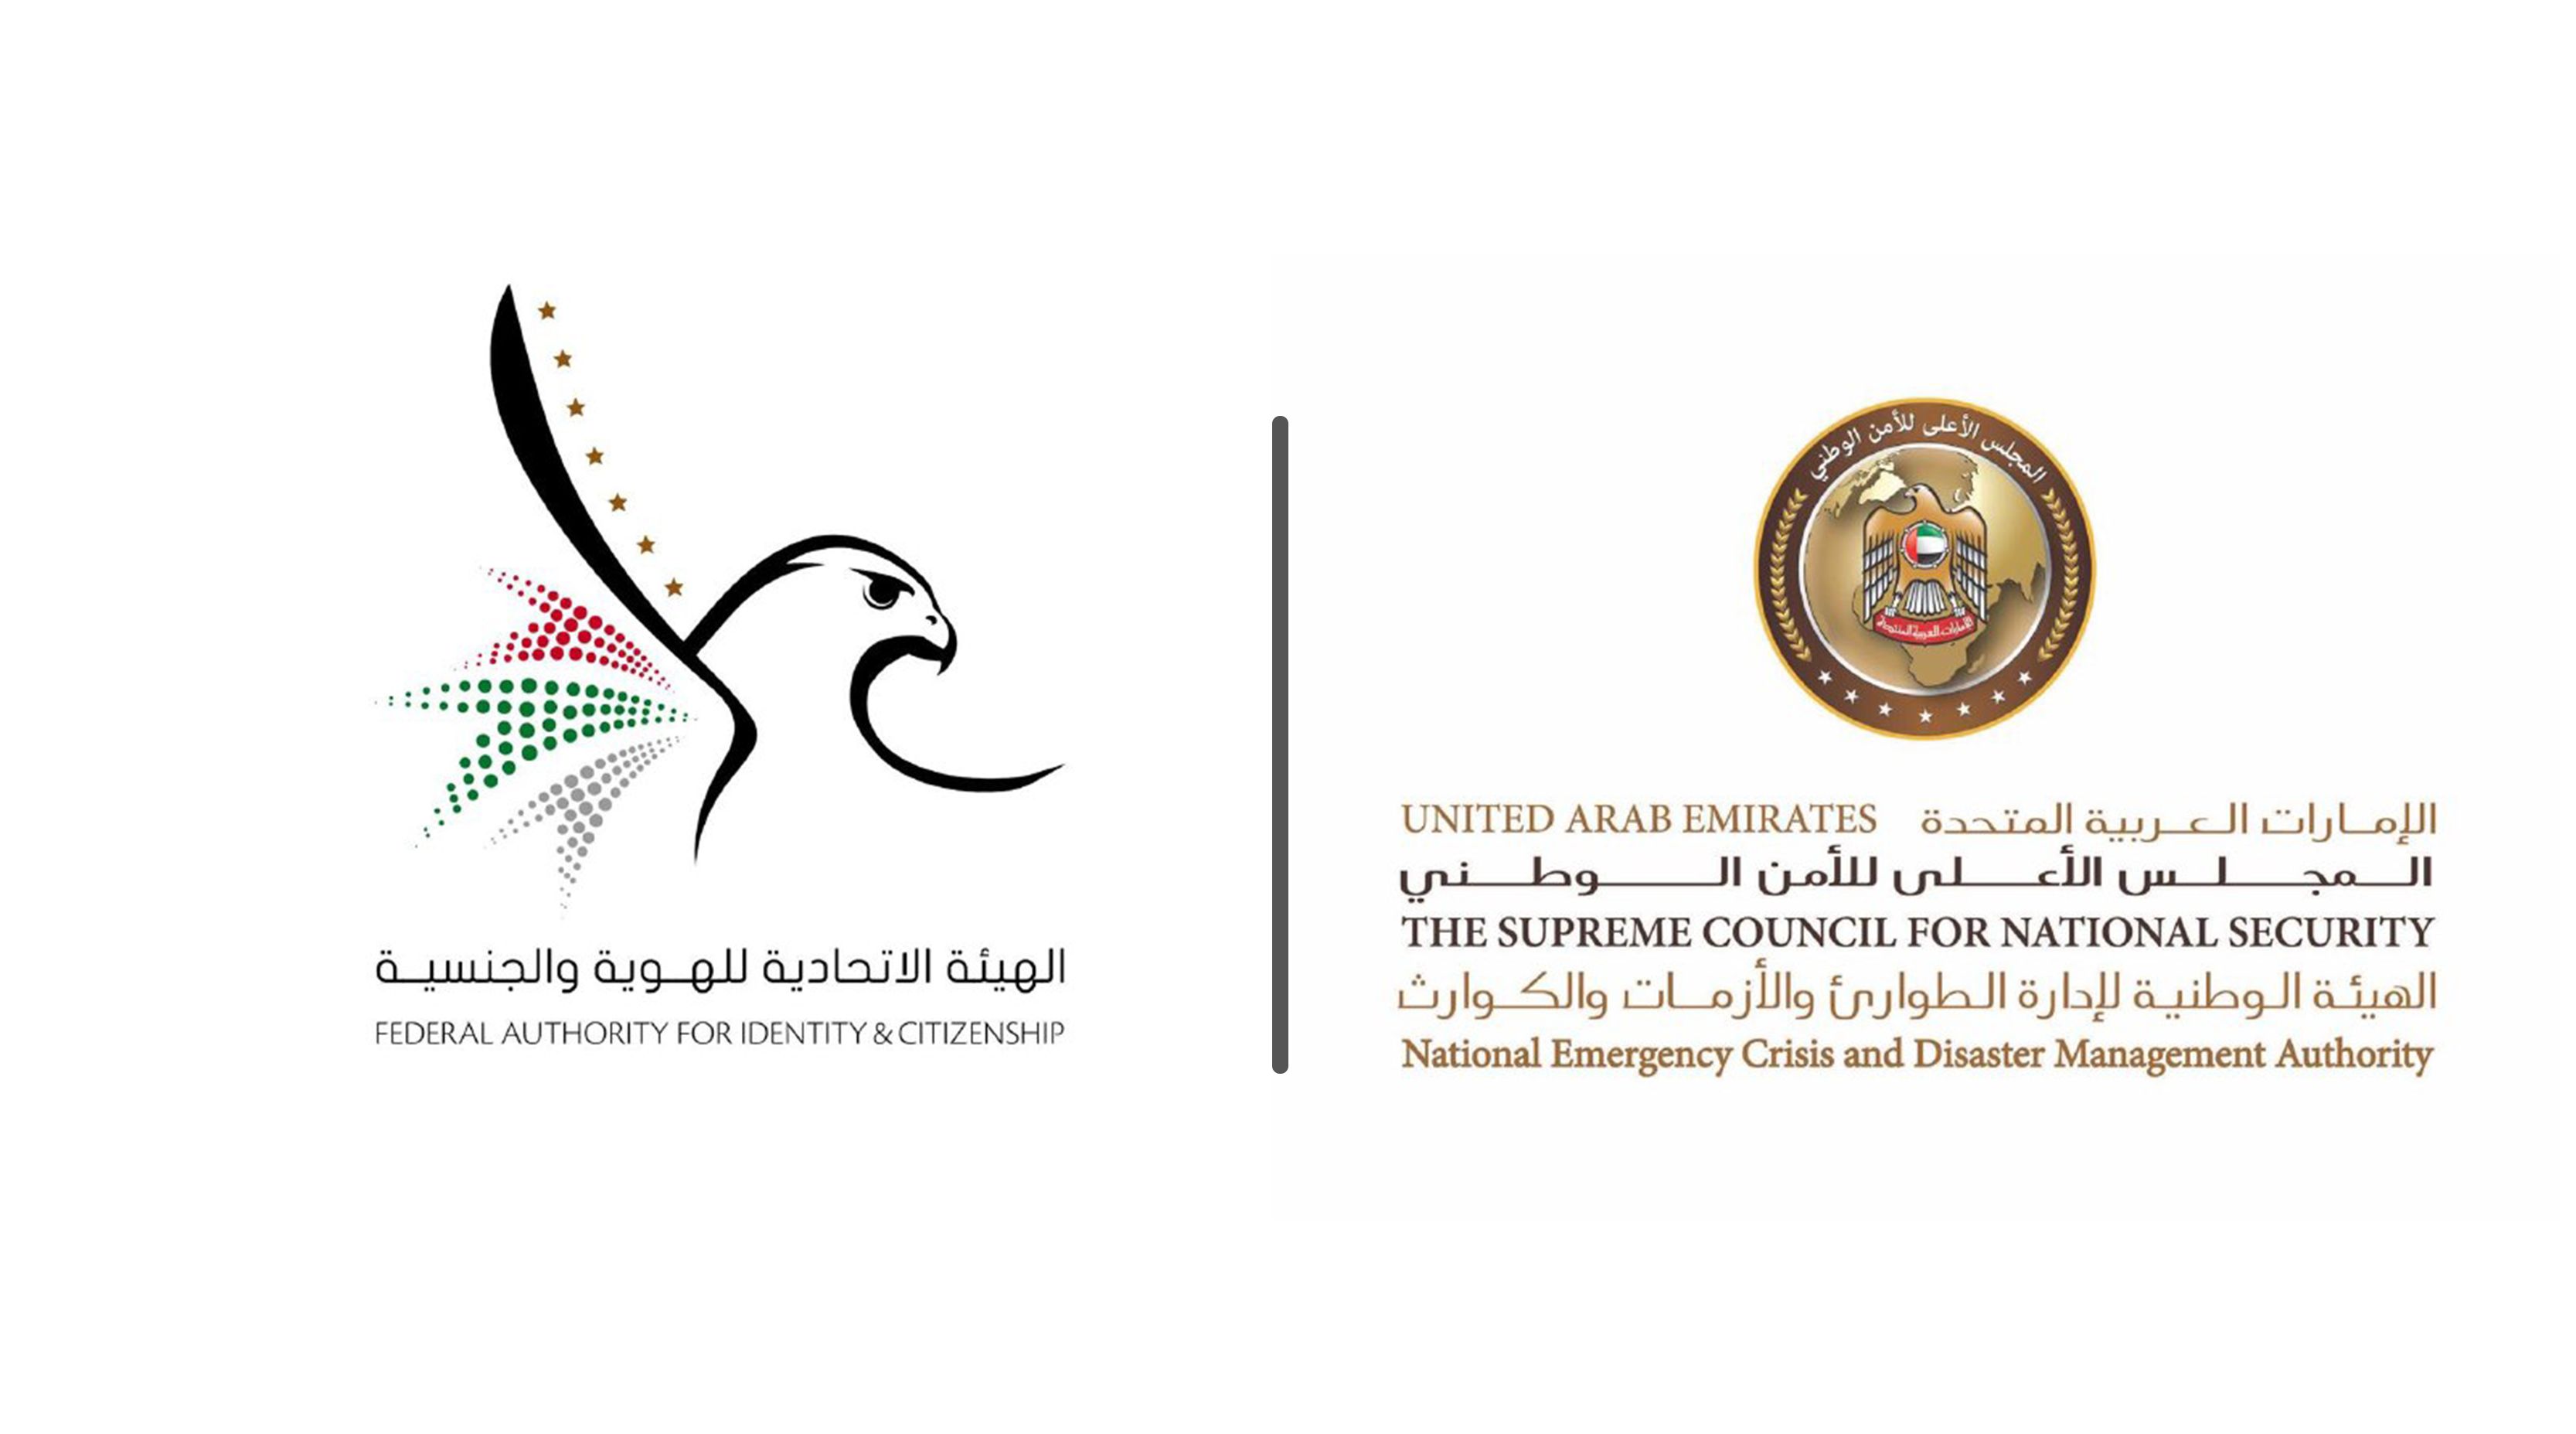 12 اگست سے ، آئی سی اے کی رجسٹریشن اس کی منظوری متحدہ عرب امارات کے رہائشیوں کے لئے وطن واپسی کے لئے لازمی نہیں ہوگی